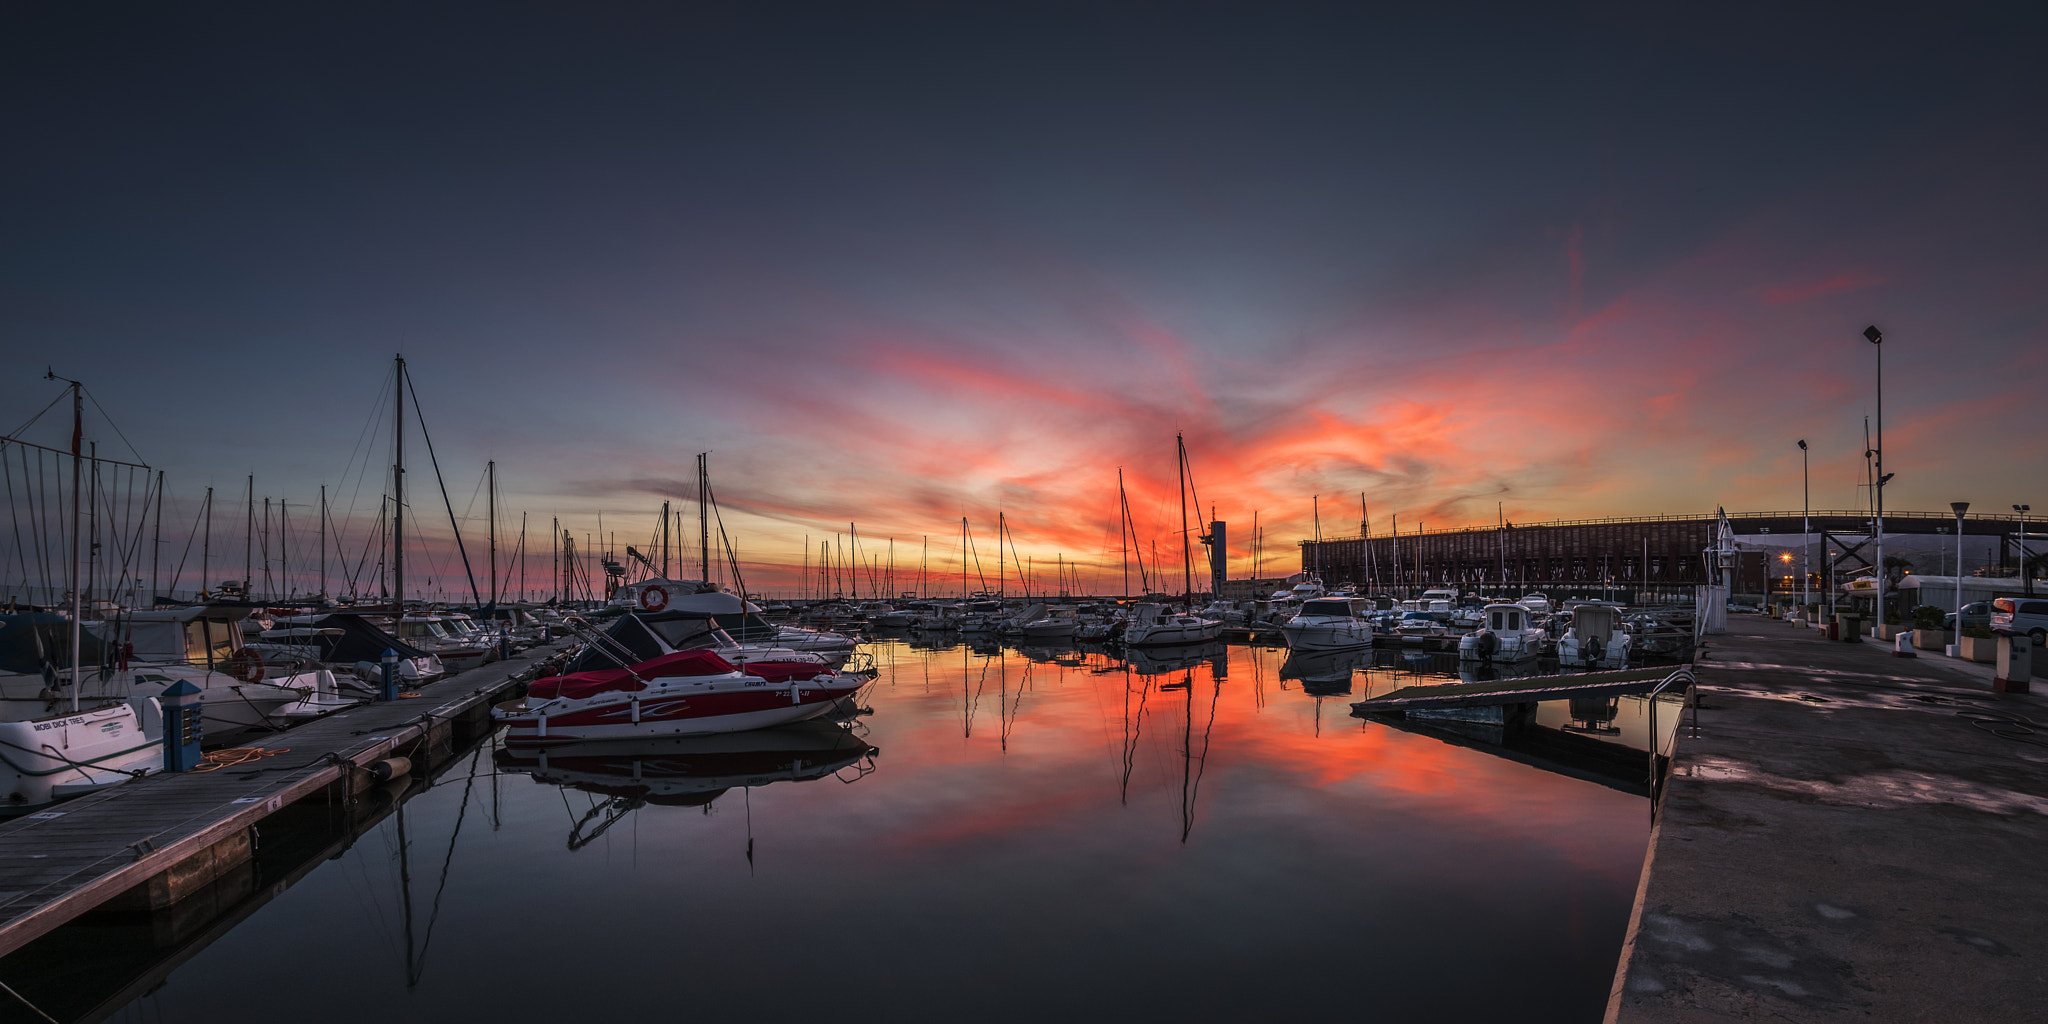 Nikon D750 sample photo. Boats at sunset photography